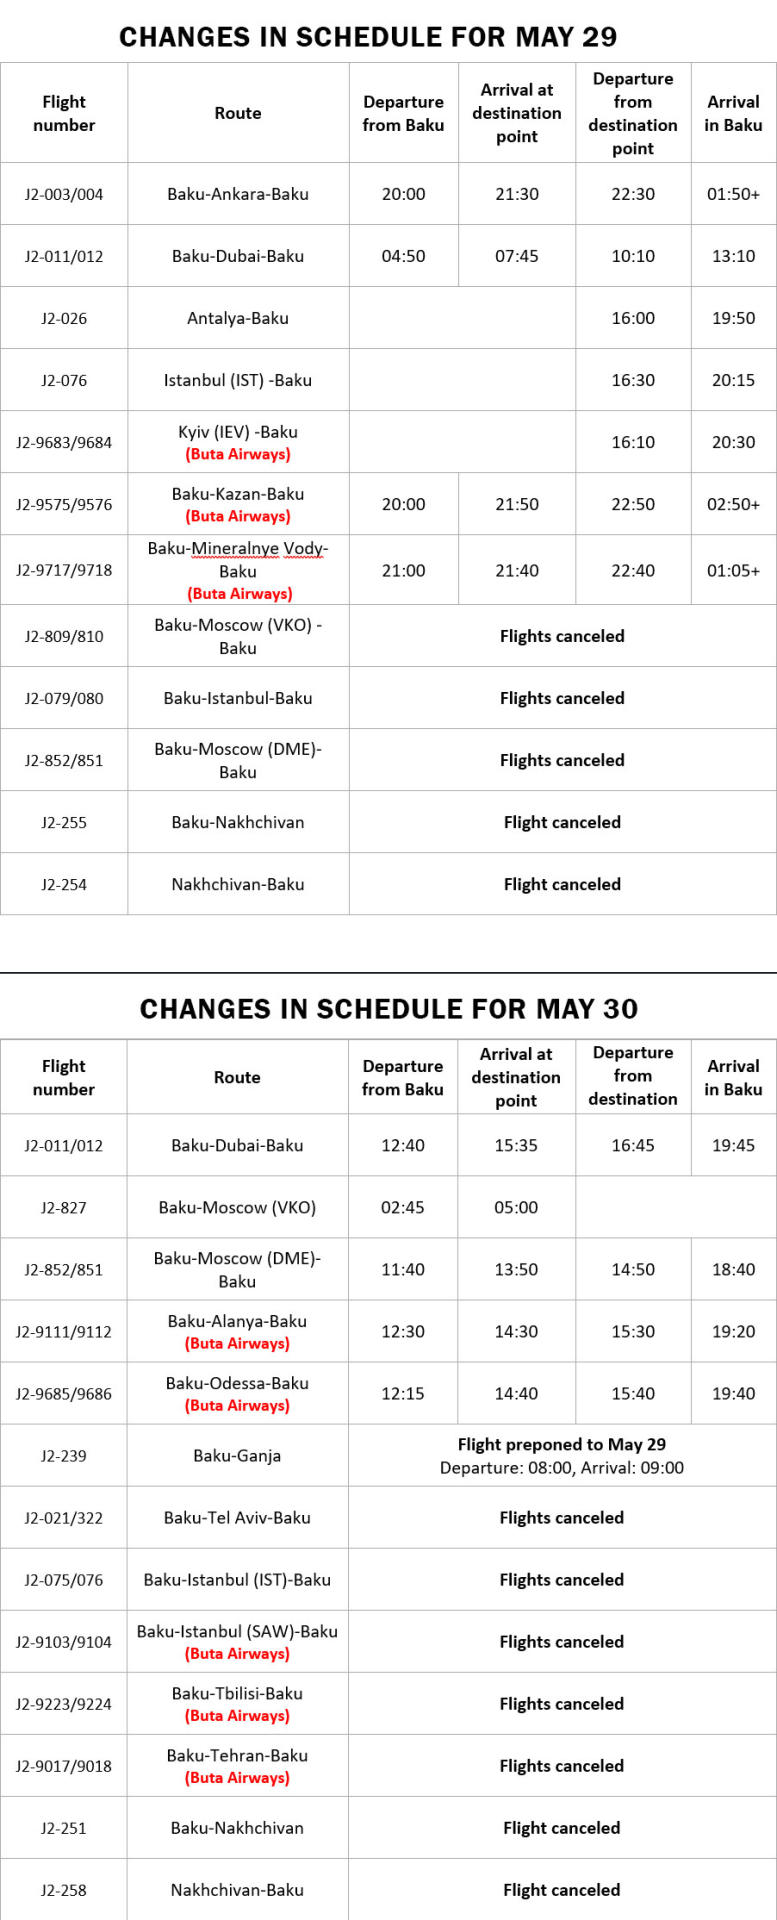 AZAL və “Buta Airways”in reysləri mayın 29-30-da dəyişdirilmiş qrafik üzrə yerinə yetiriləcək